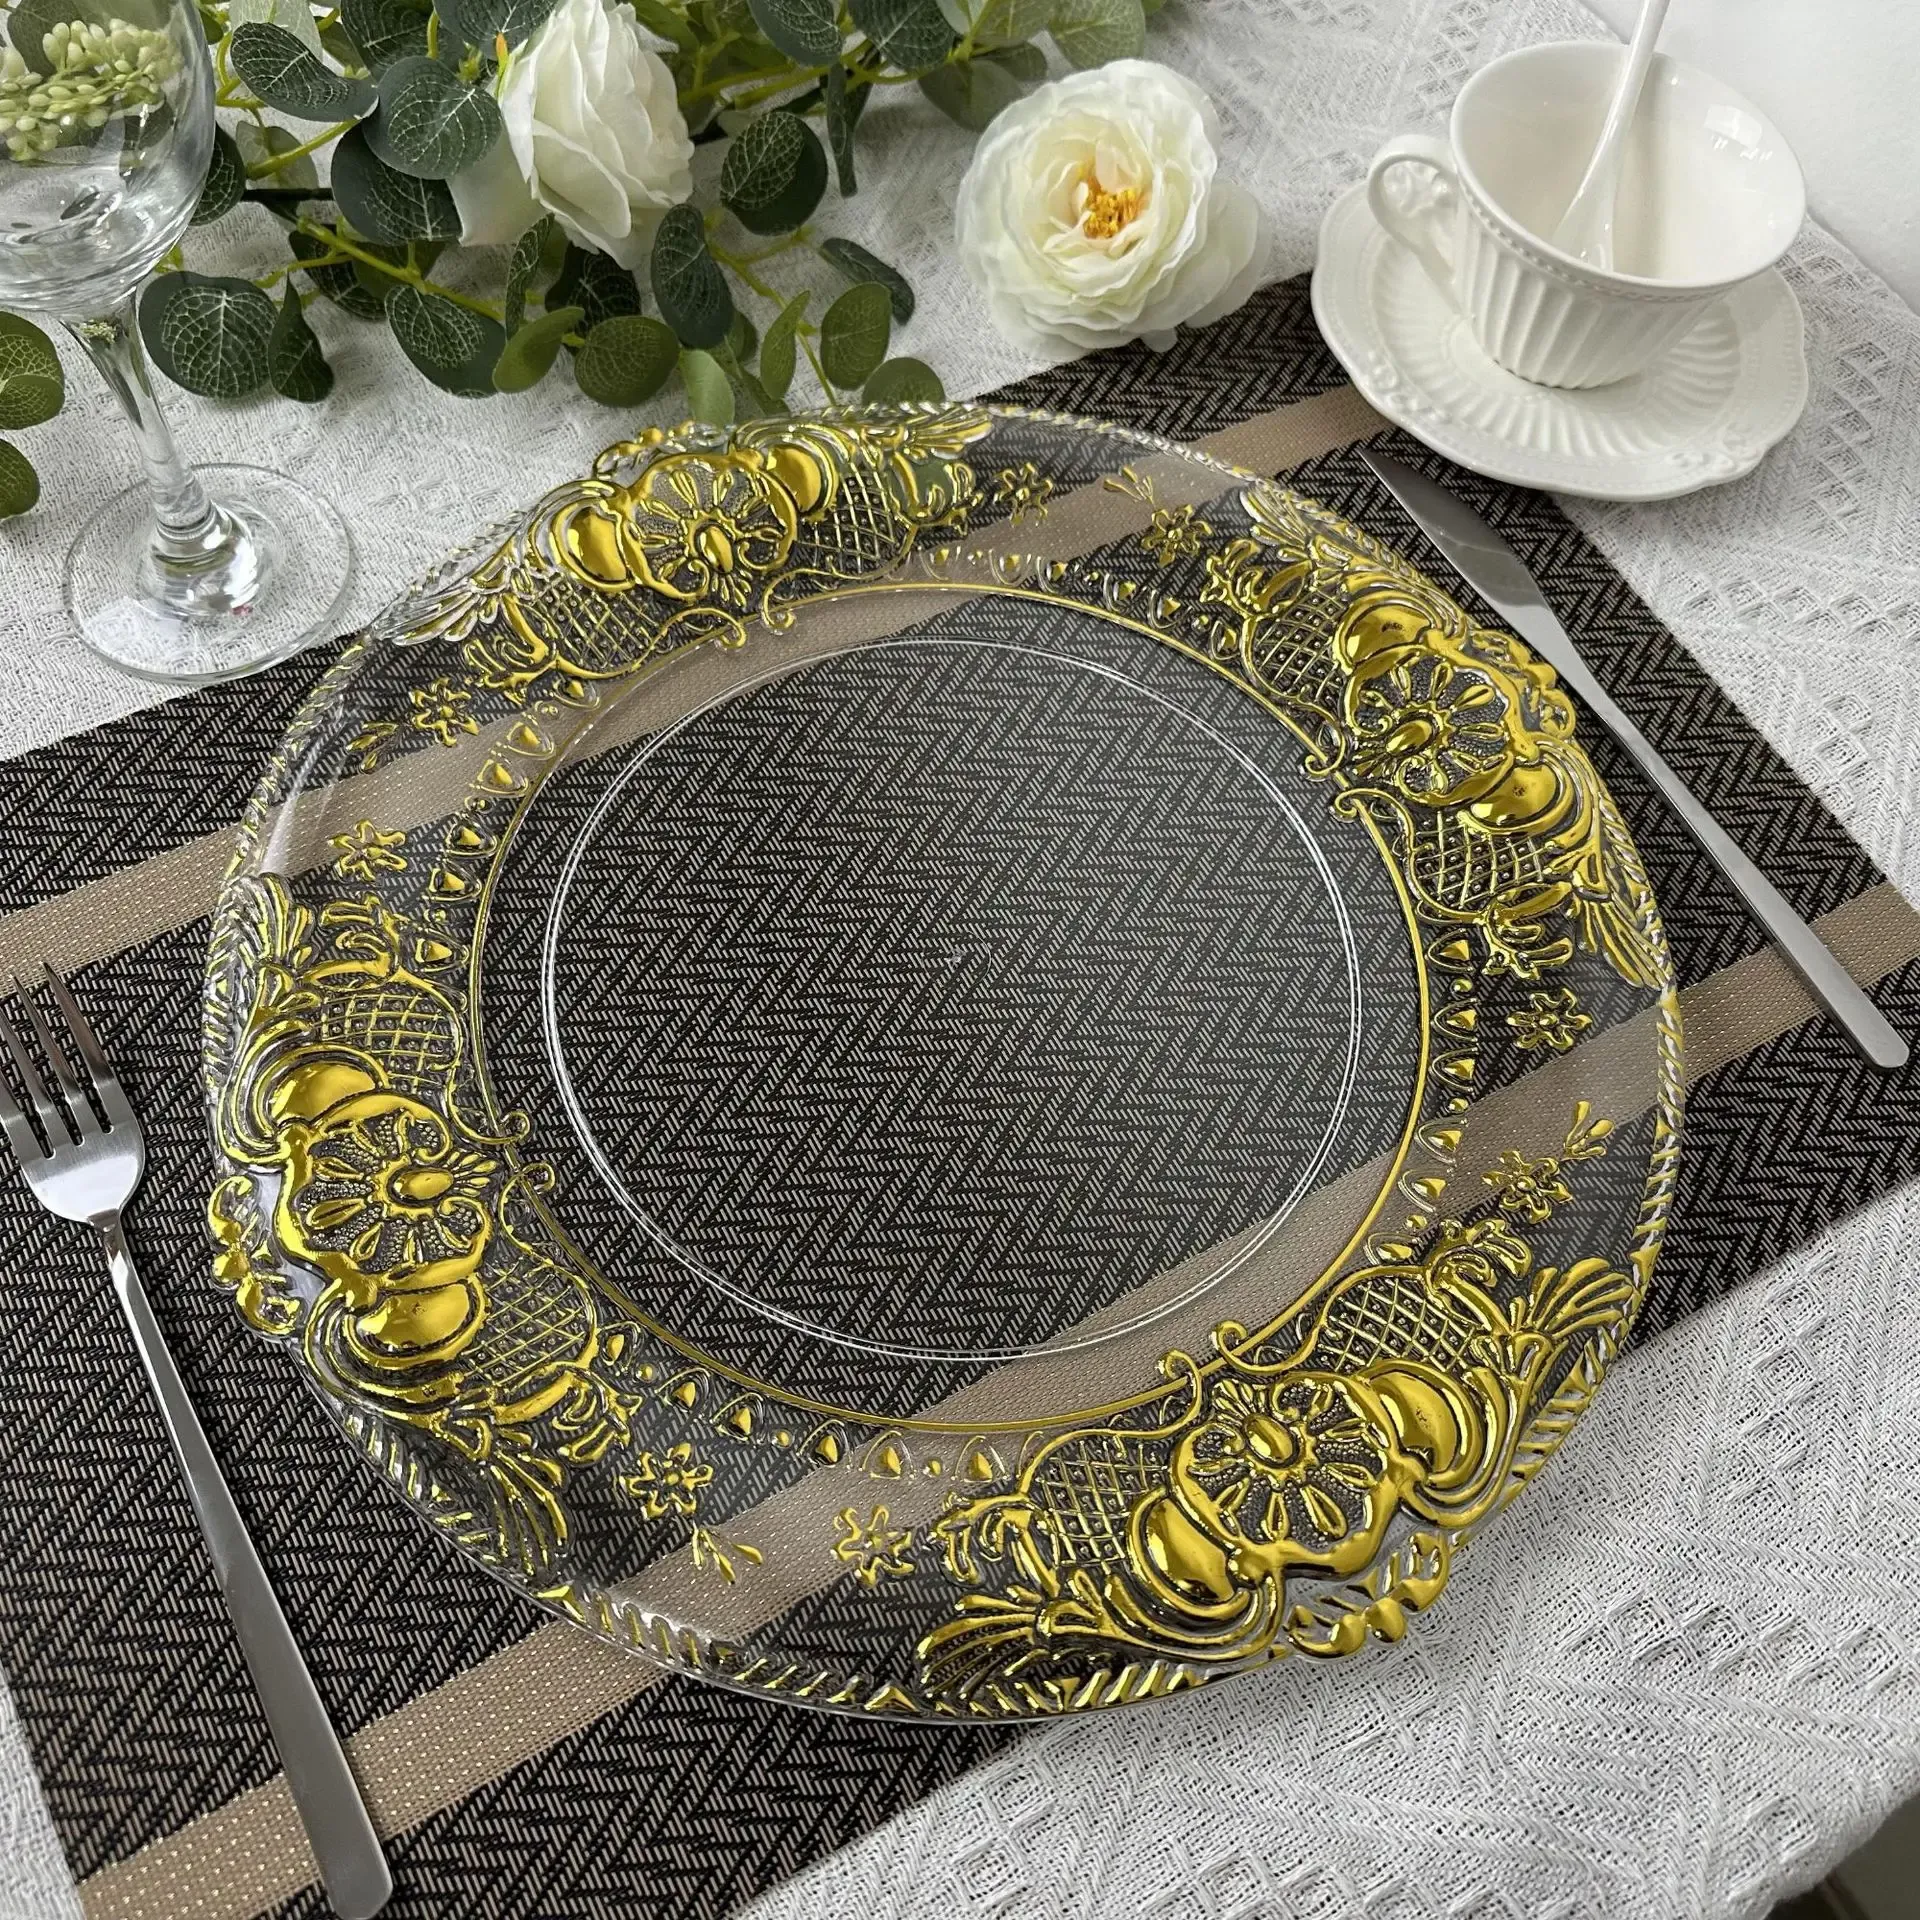 Piatti di ricarica da 50 pezzi Piatti rotondi in plastica trasparente con motivi dorati in stile europeo Piatto da pranzo decorativo in acrilico per la tavola